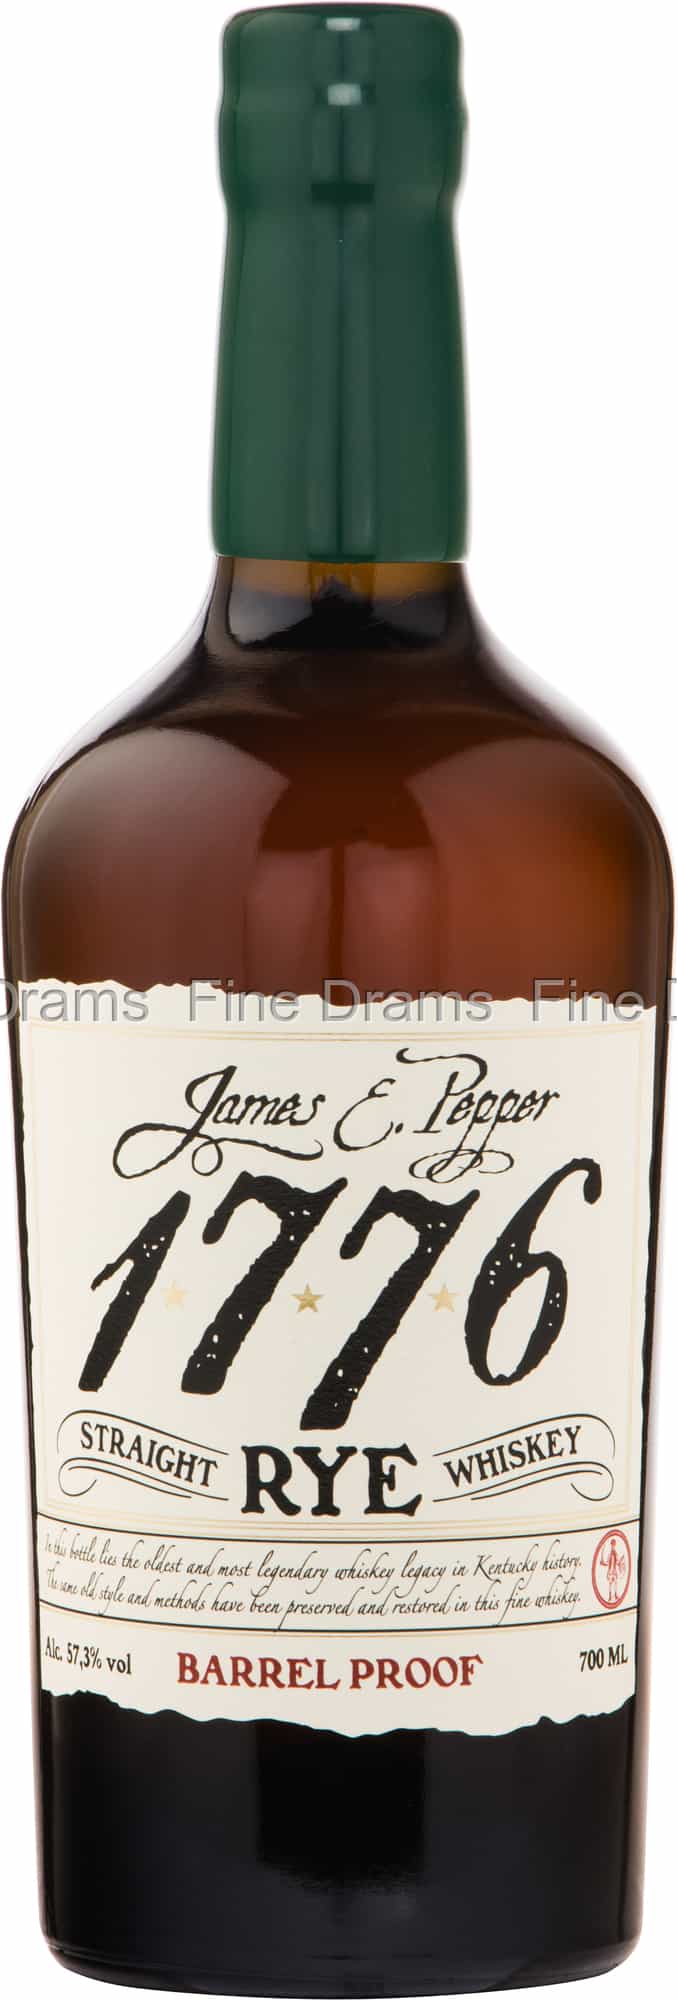 James E. Pepper 1776 Proof Whiskey Rye Barrel